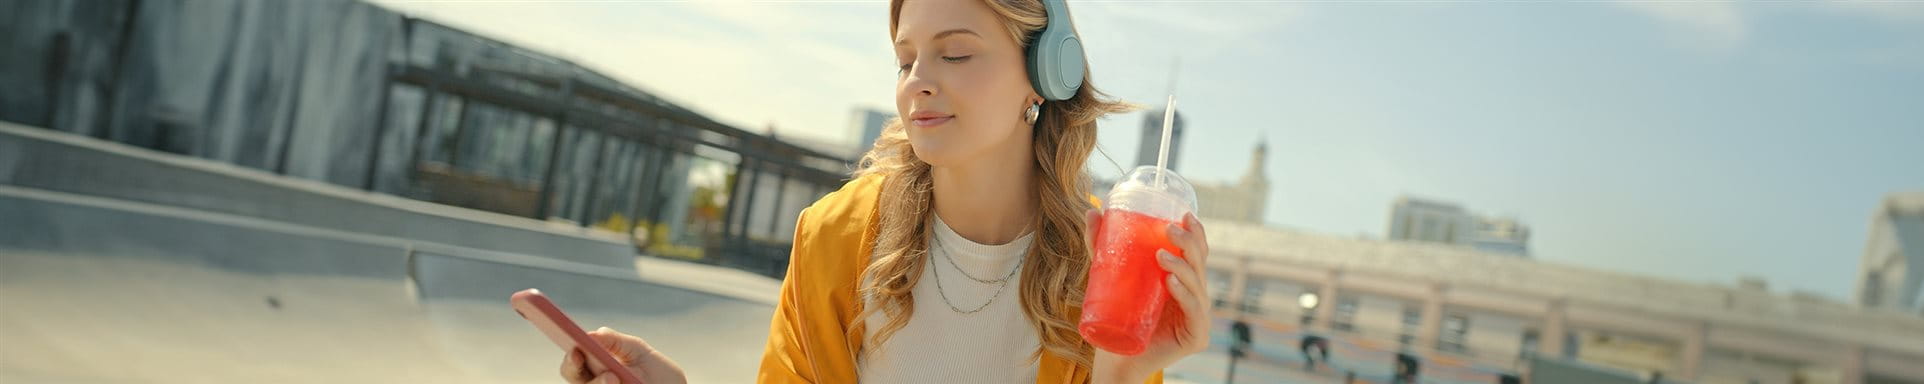 Una giovane ragazza ascolta musica tramite cuffie e tiene in mano una bevanda al tè freddo.